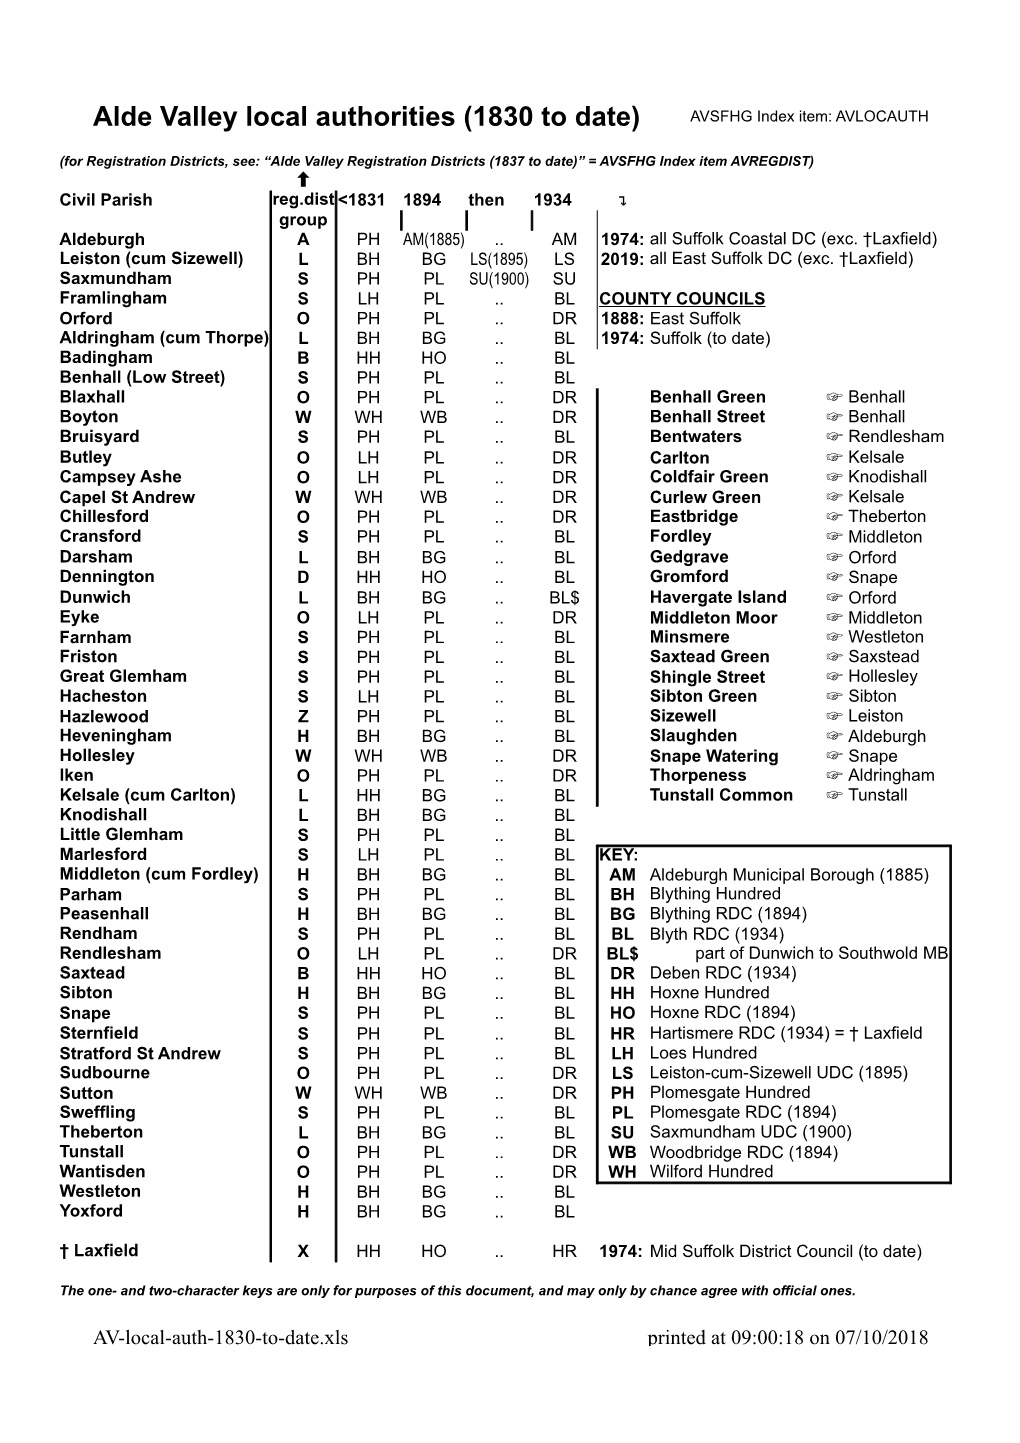 Alde Valley Local Authorities (1830 to Date) AVSFHG Index Item: AVLOCAUTH